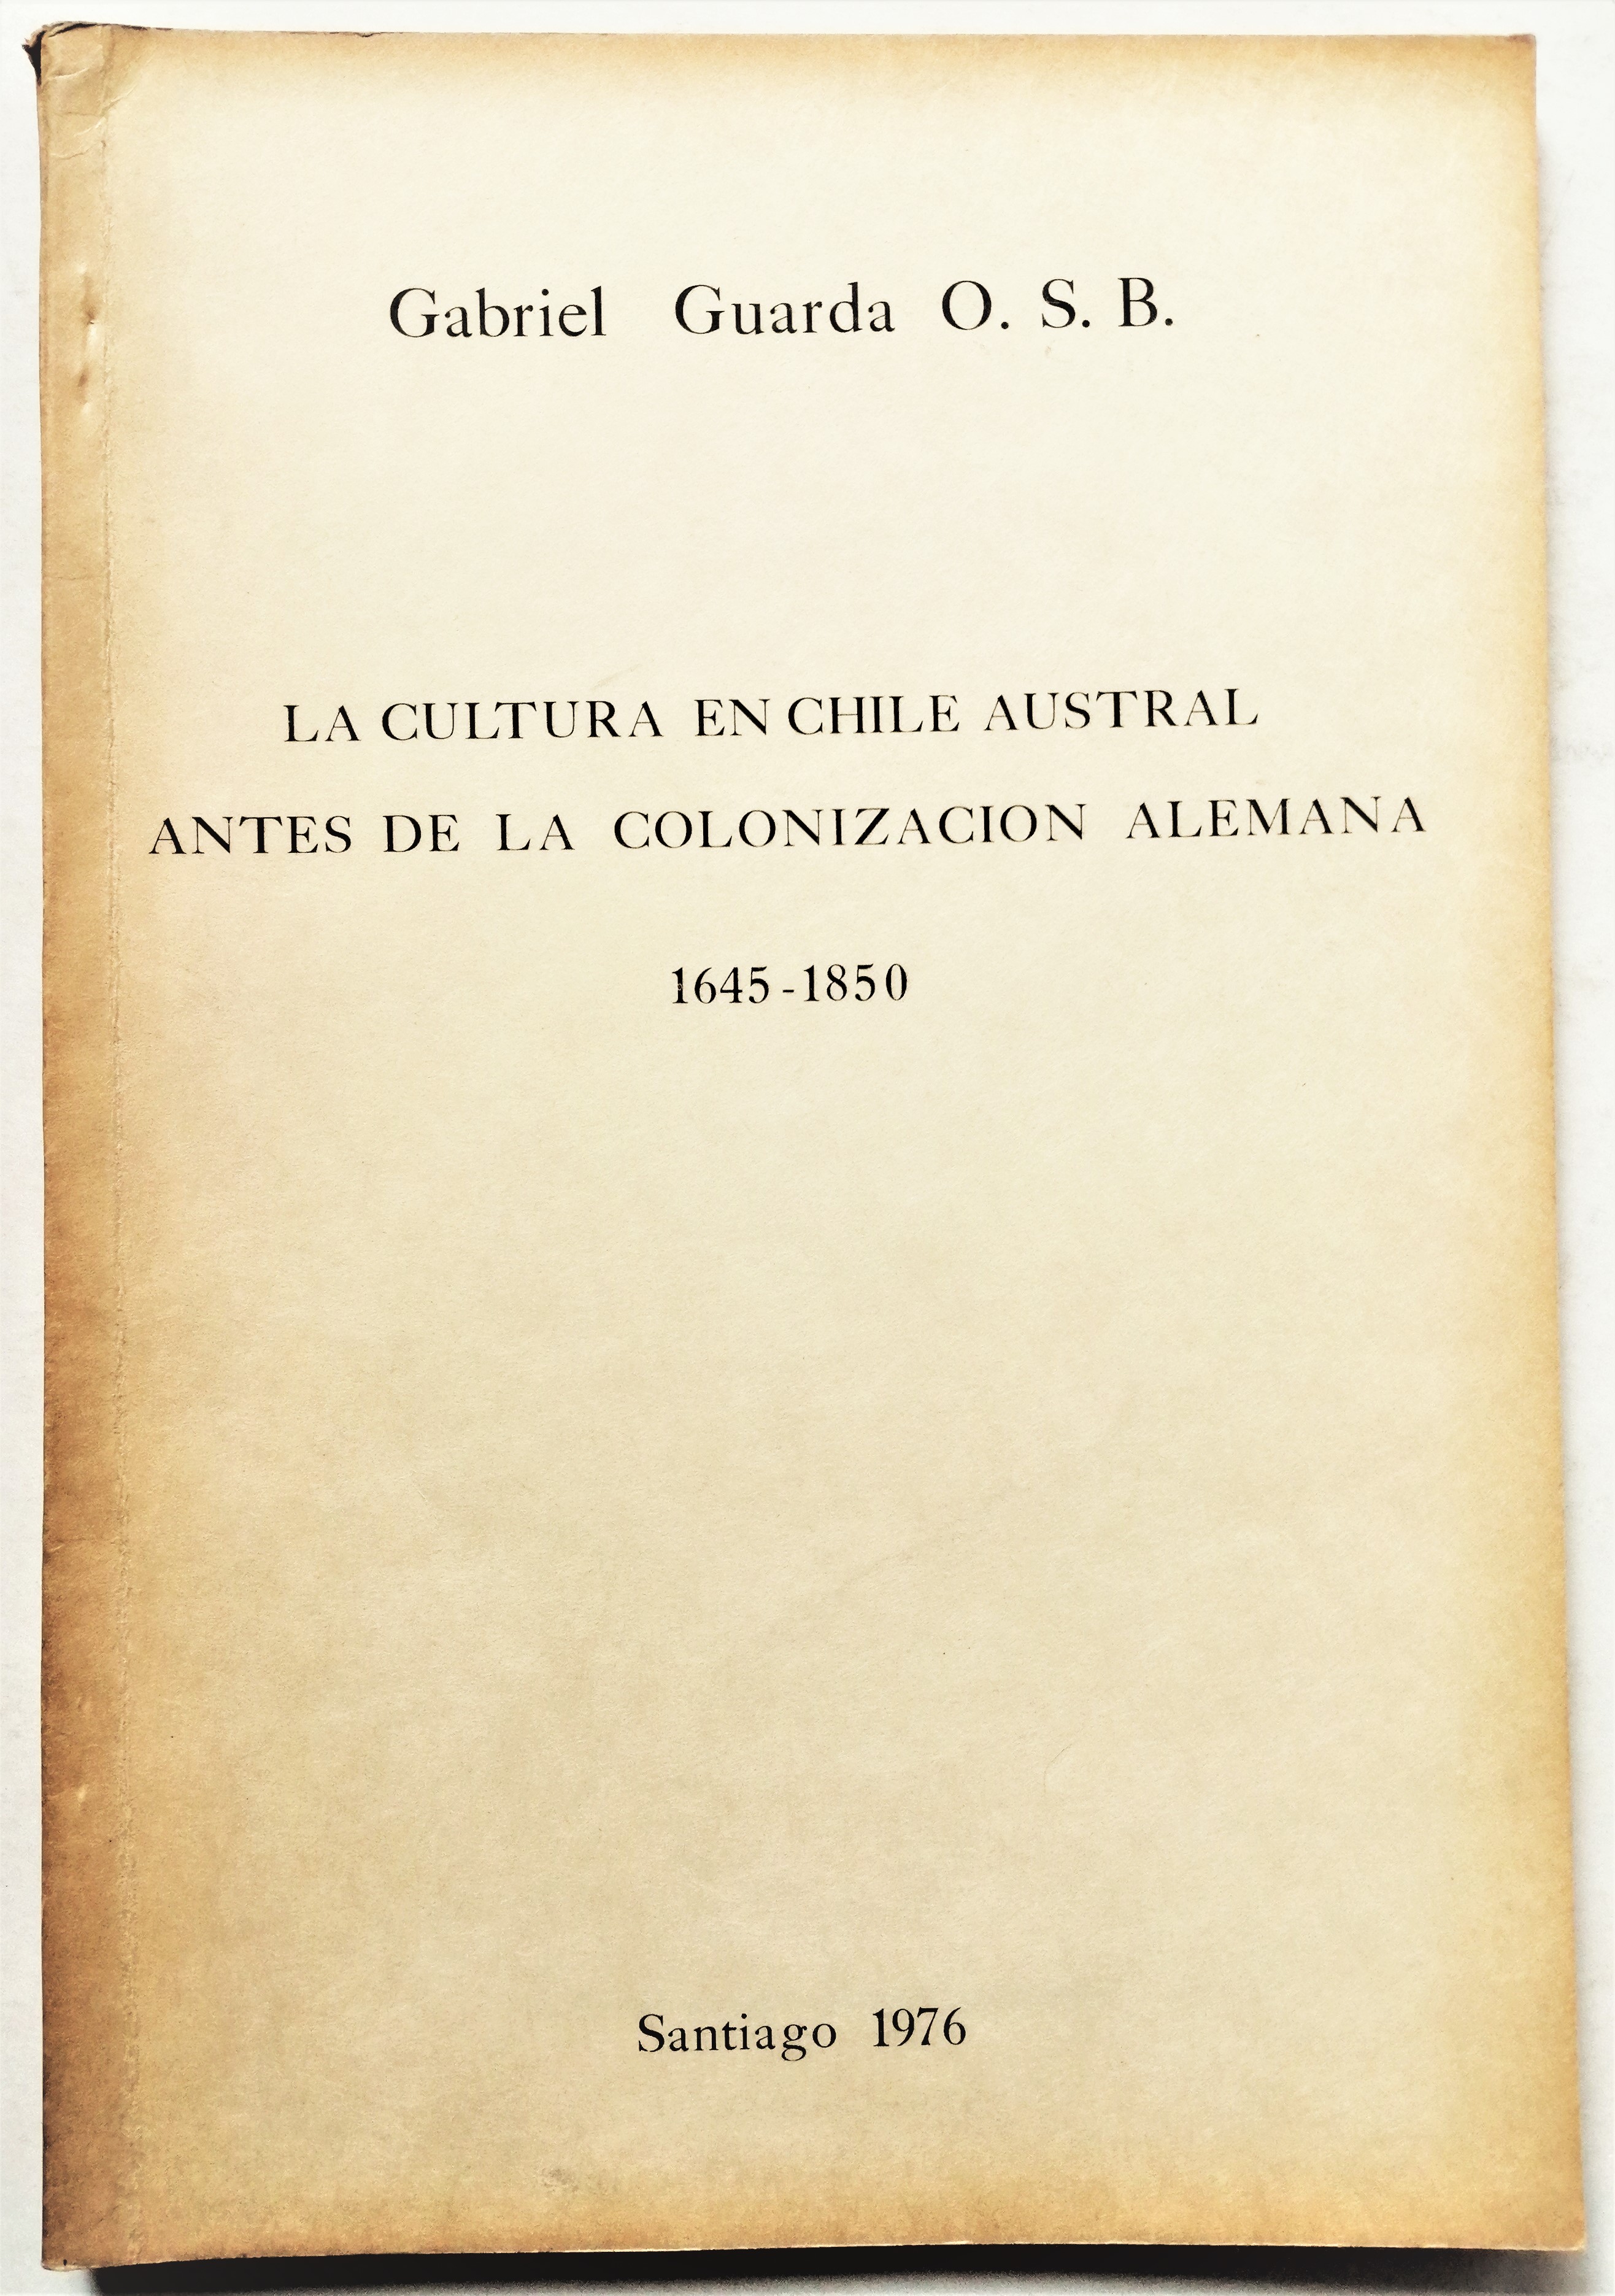 Gabriel Guarda O. S. B - La cultura en chile austral antes de la colonización alemana 1645-1850